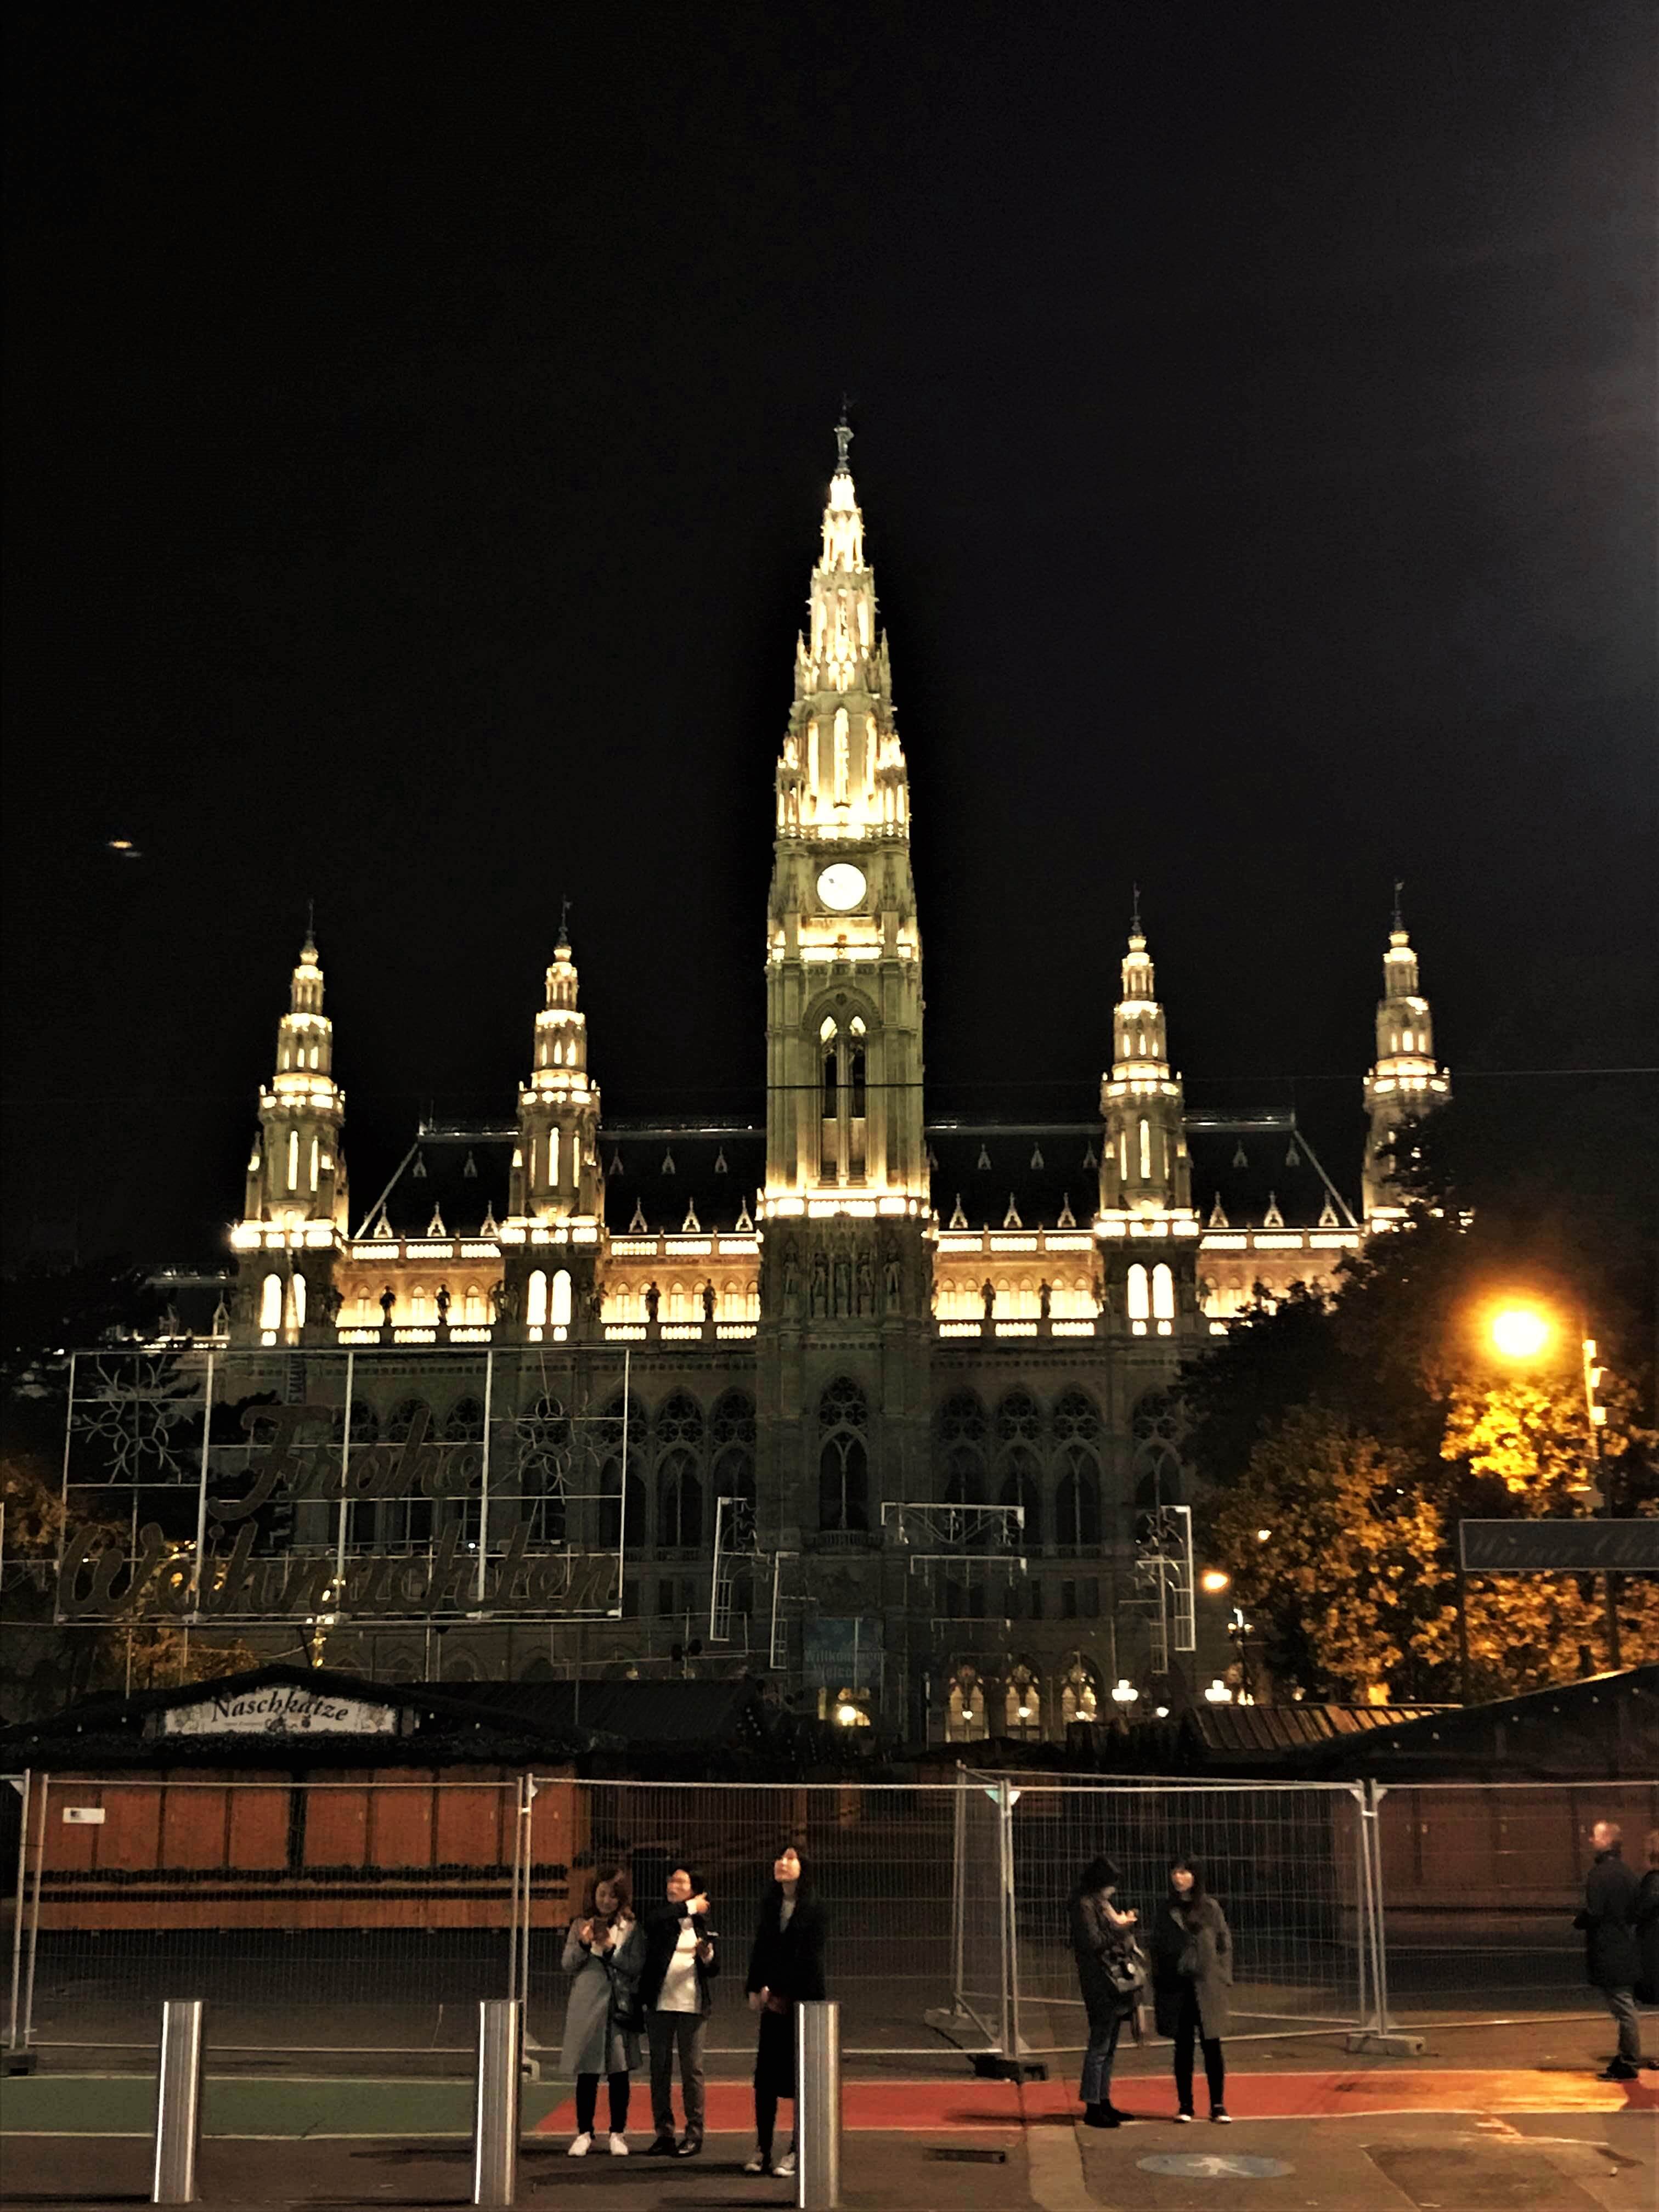 Vienna city hall at night